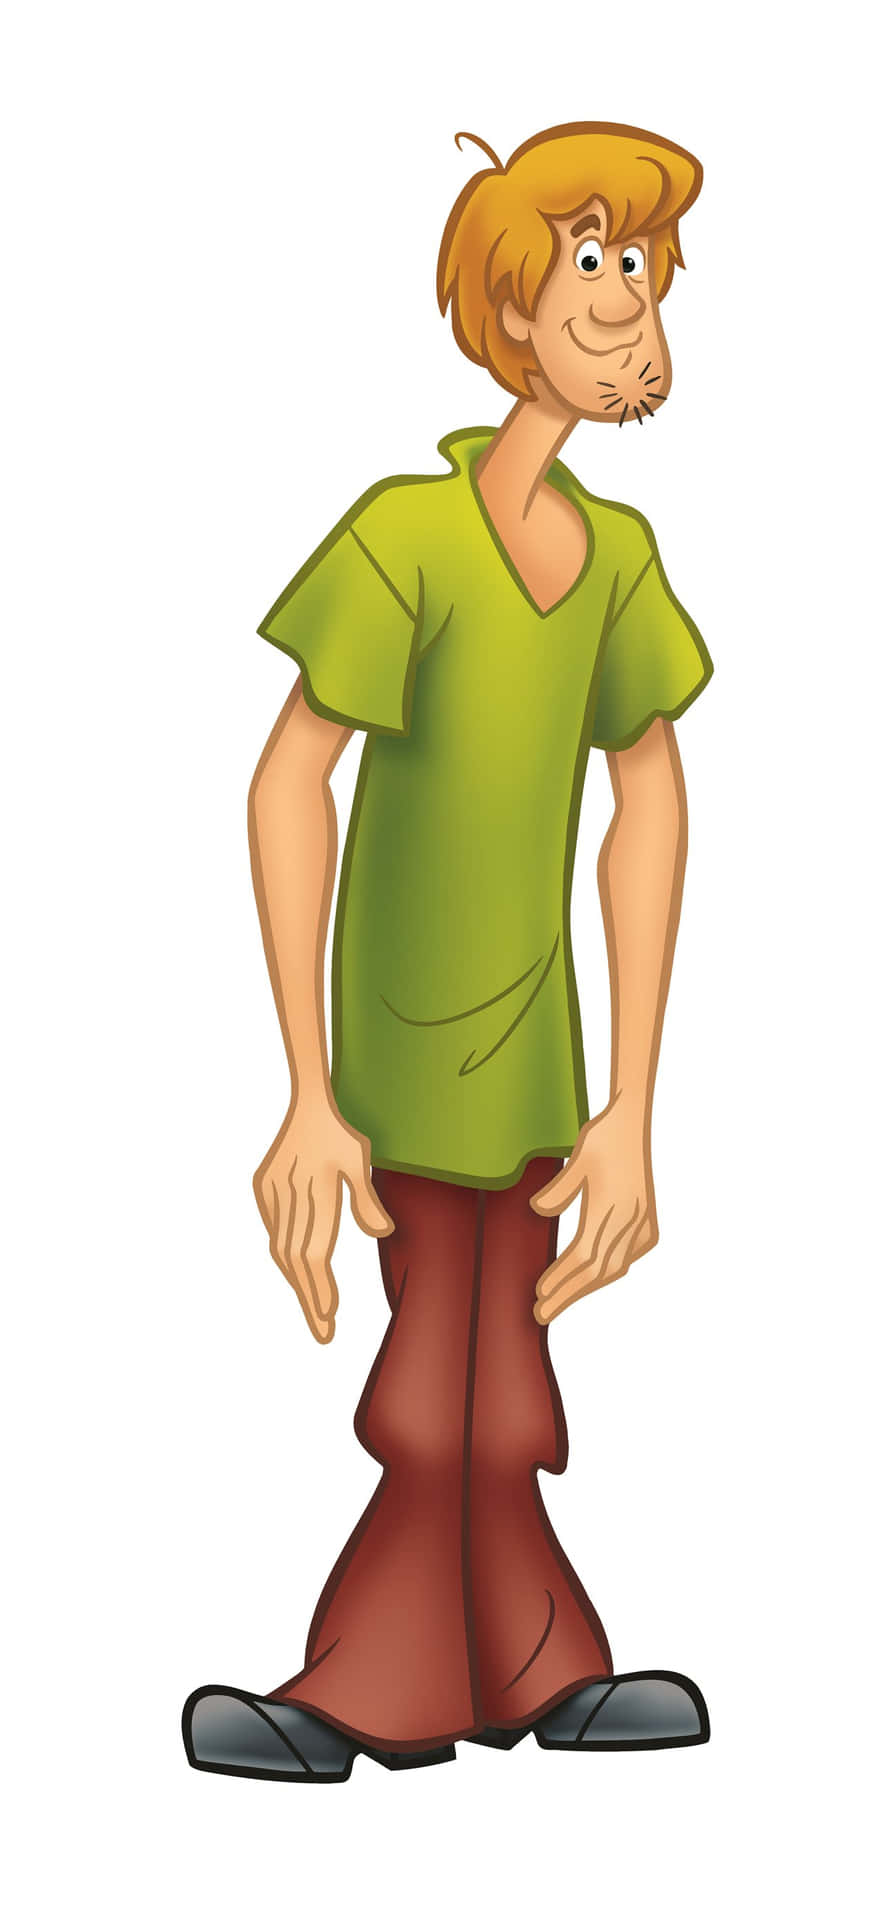 Einecartoon-figur Mit Einem Grünen Shirt Und Einer Grünen Hose. Wallpaper